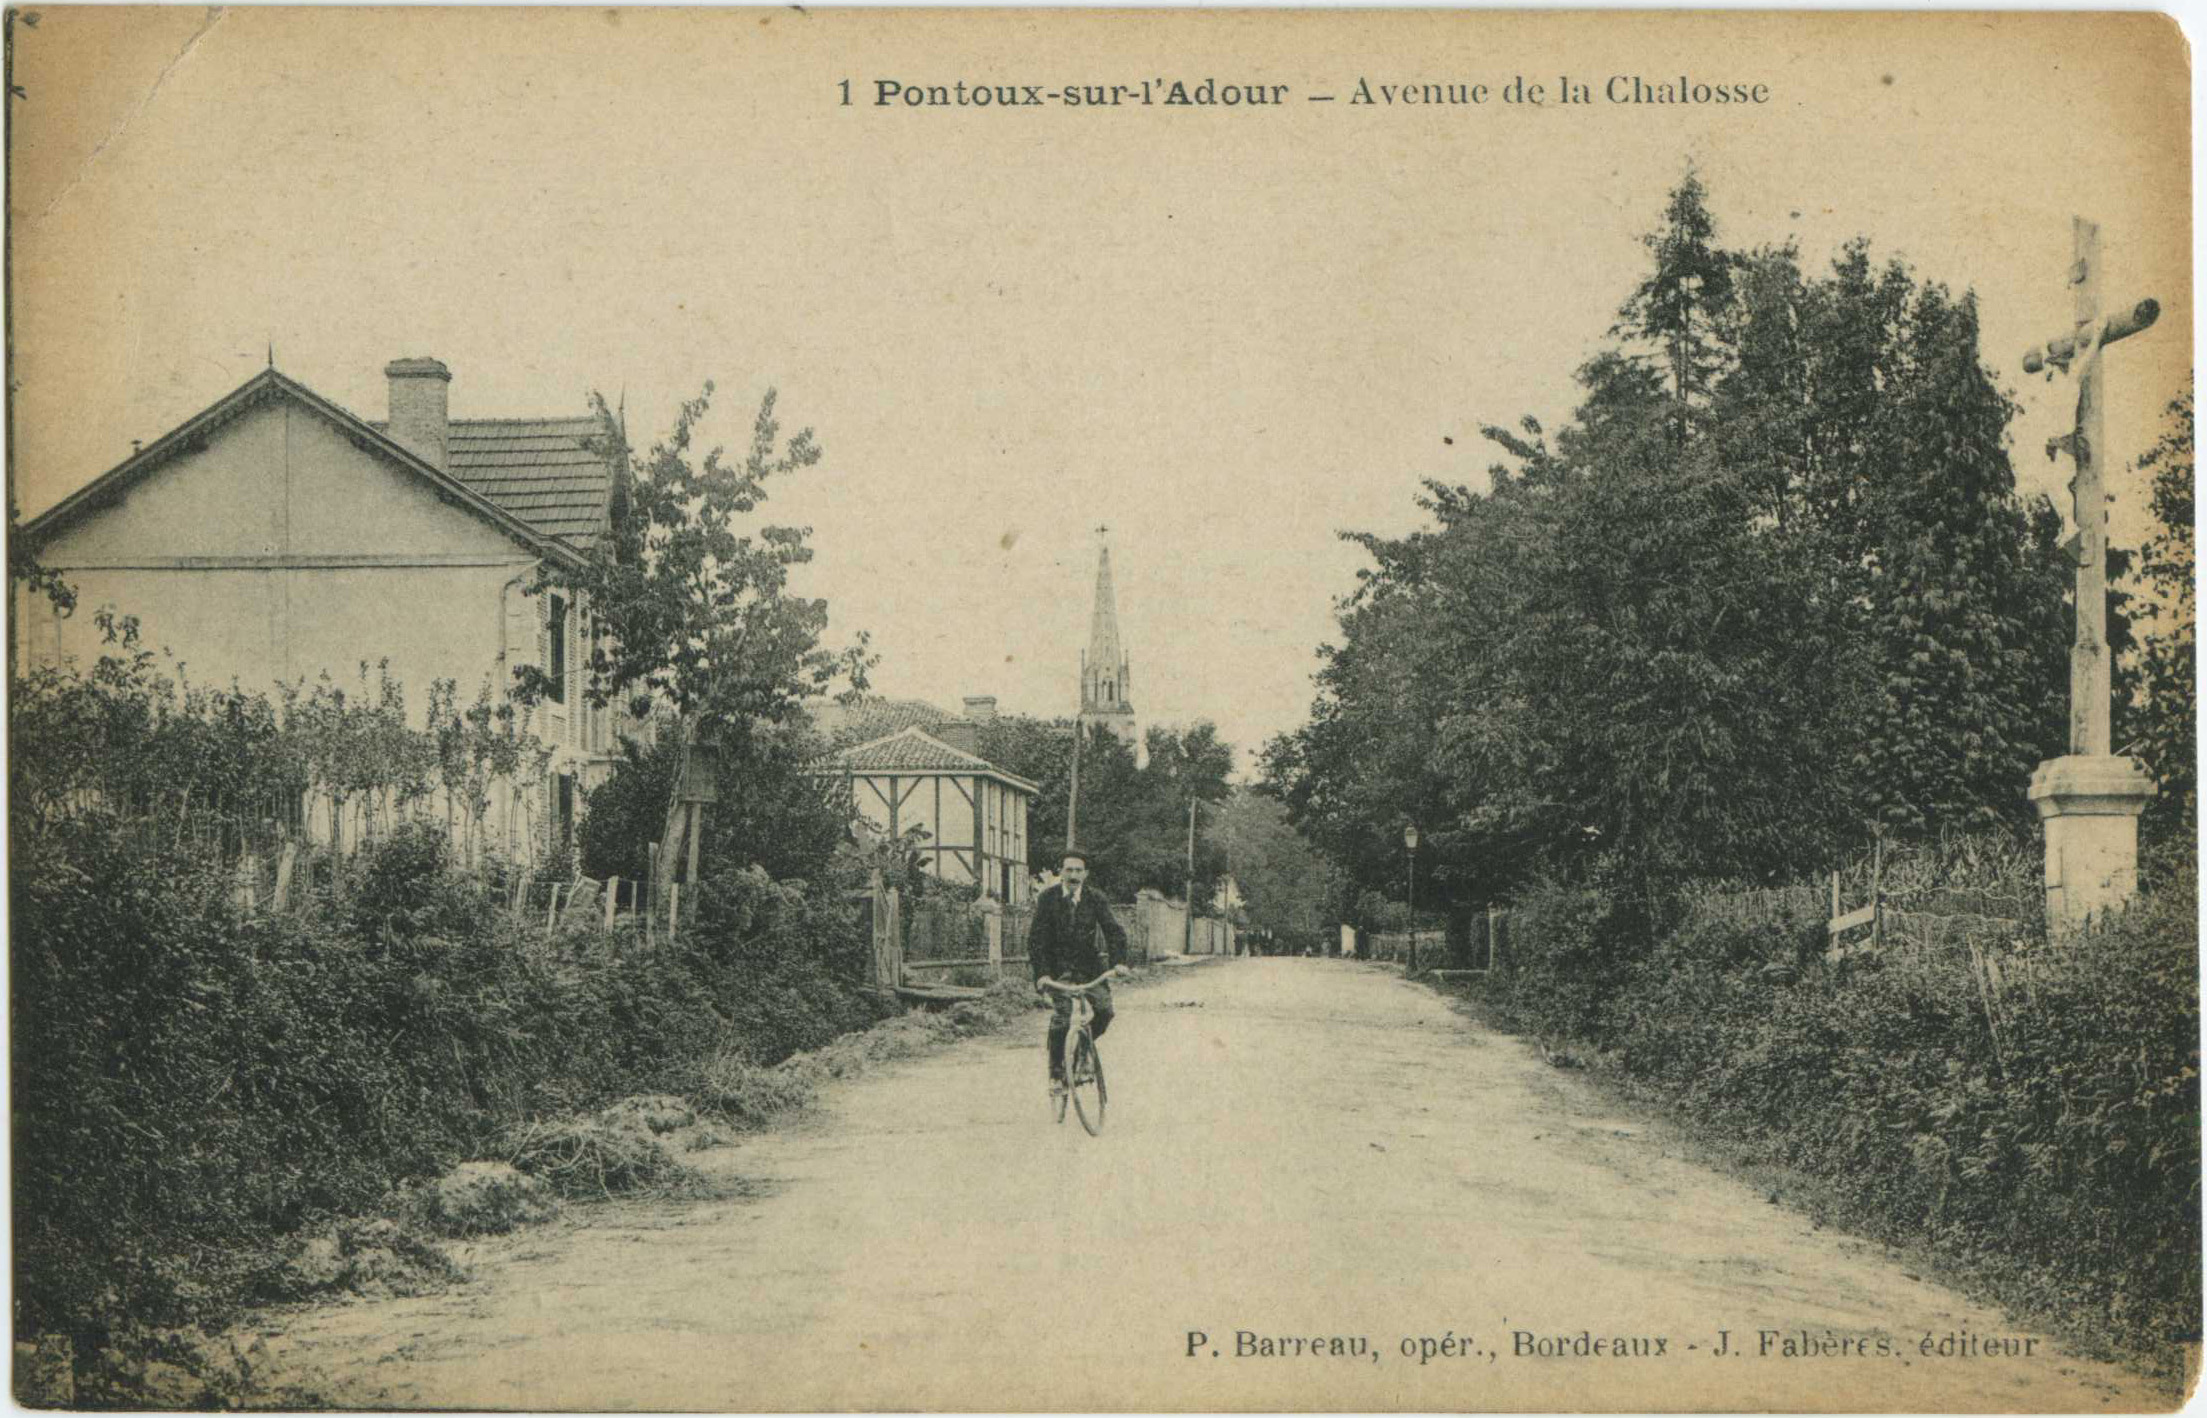 Pontonx-sur-l'Adour - Avenue de la Chalosse